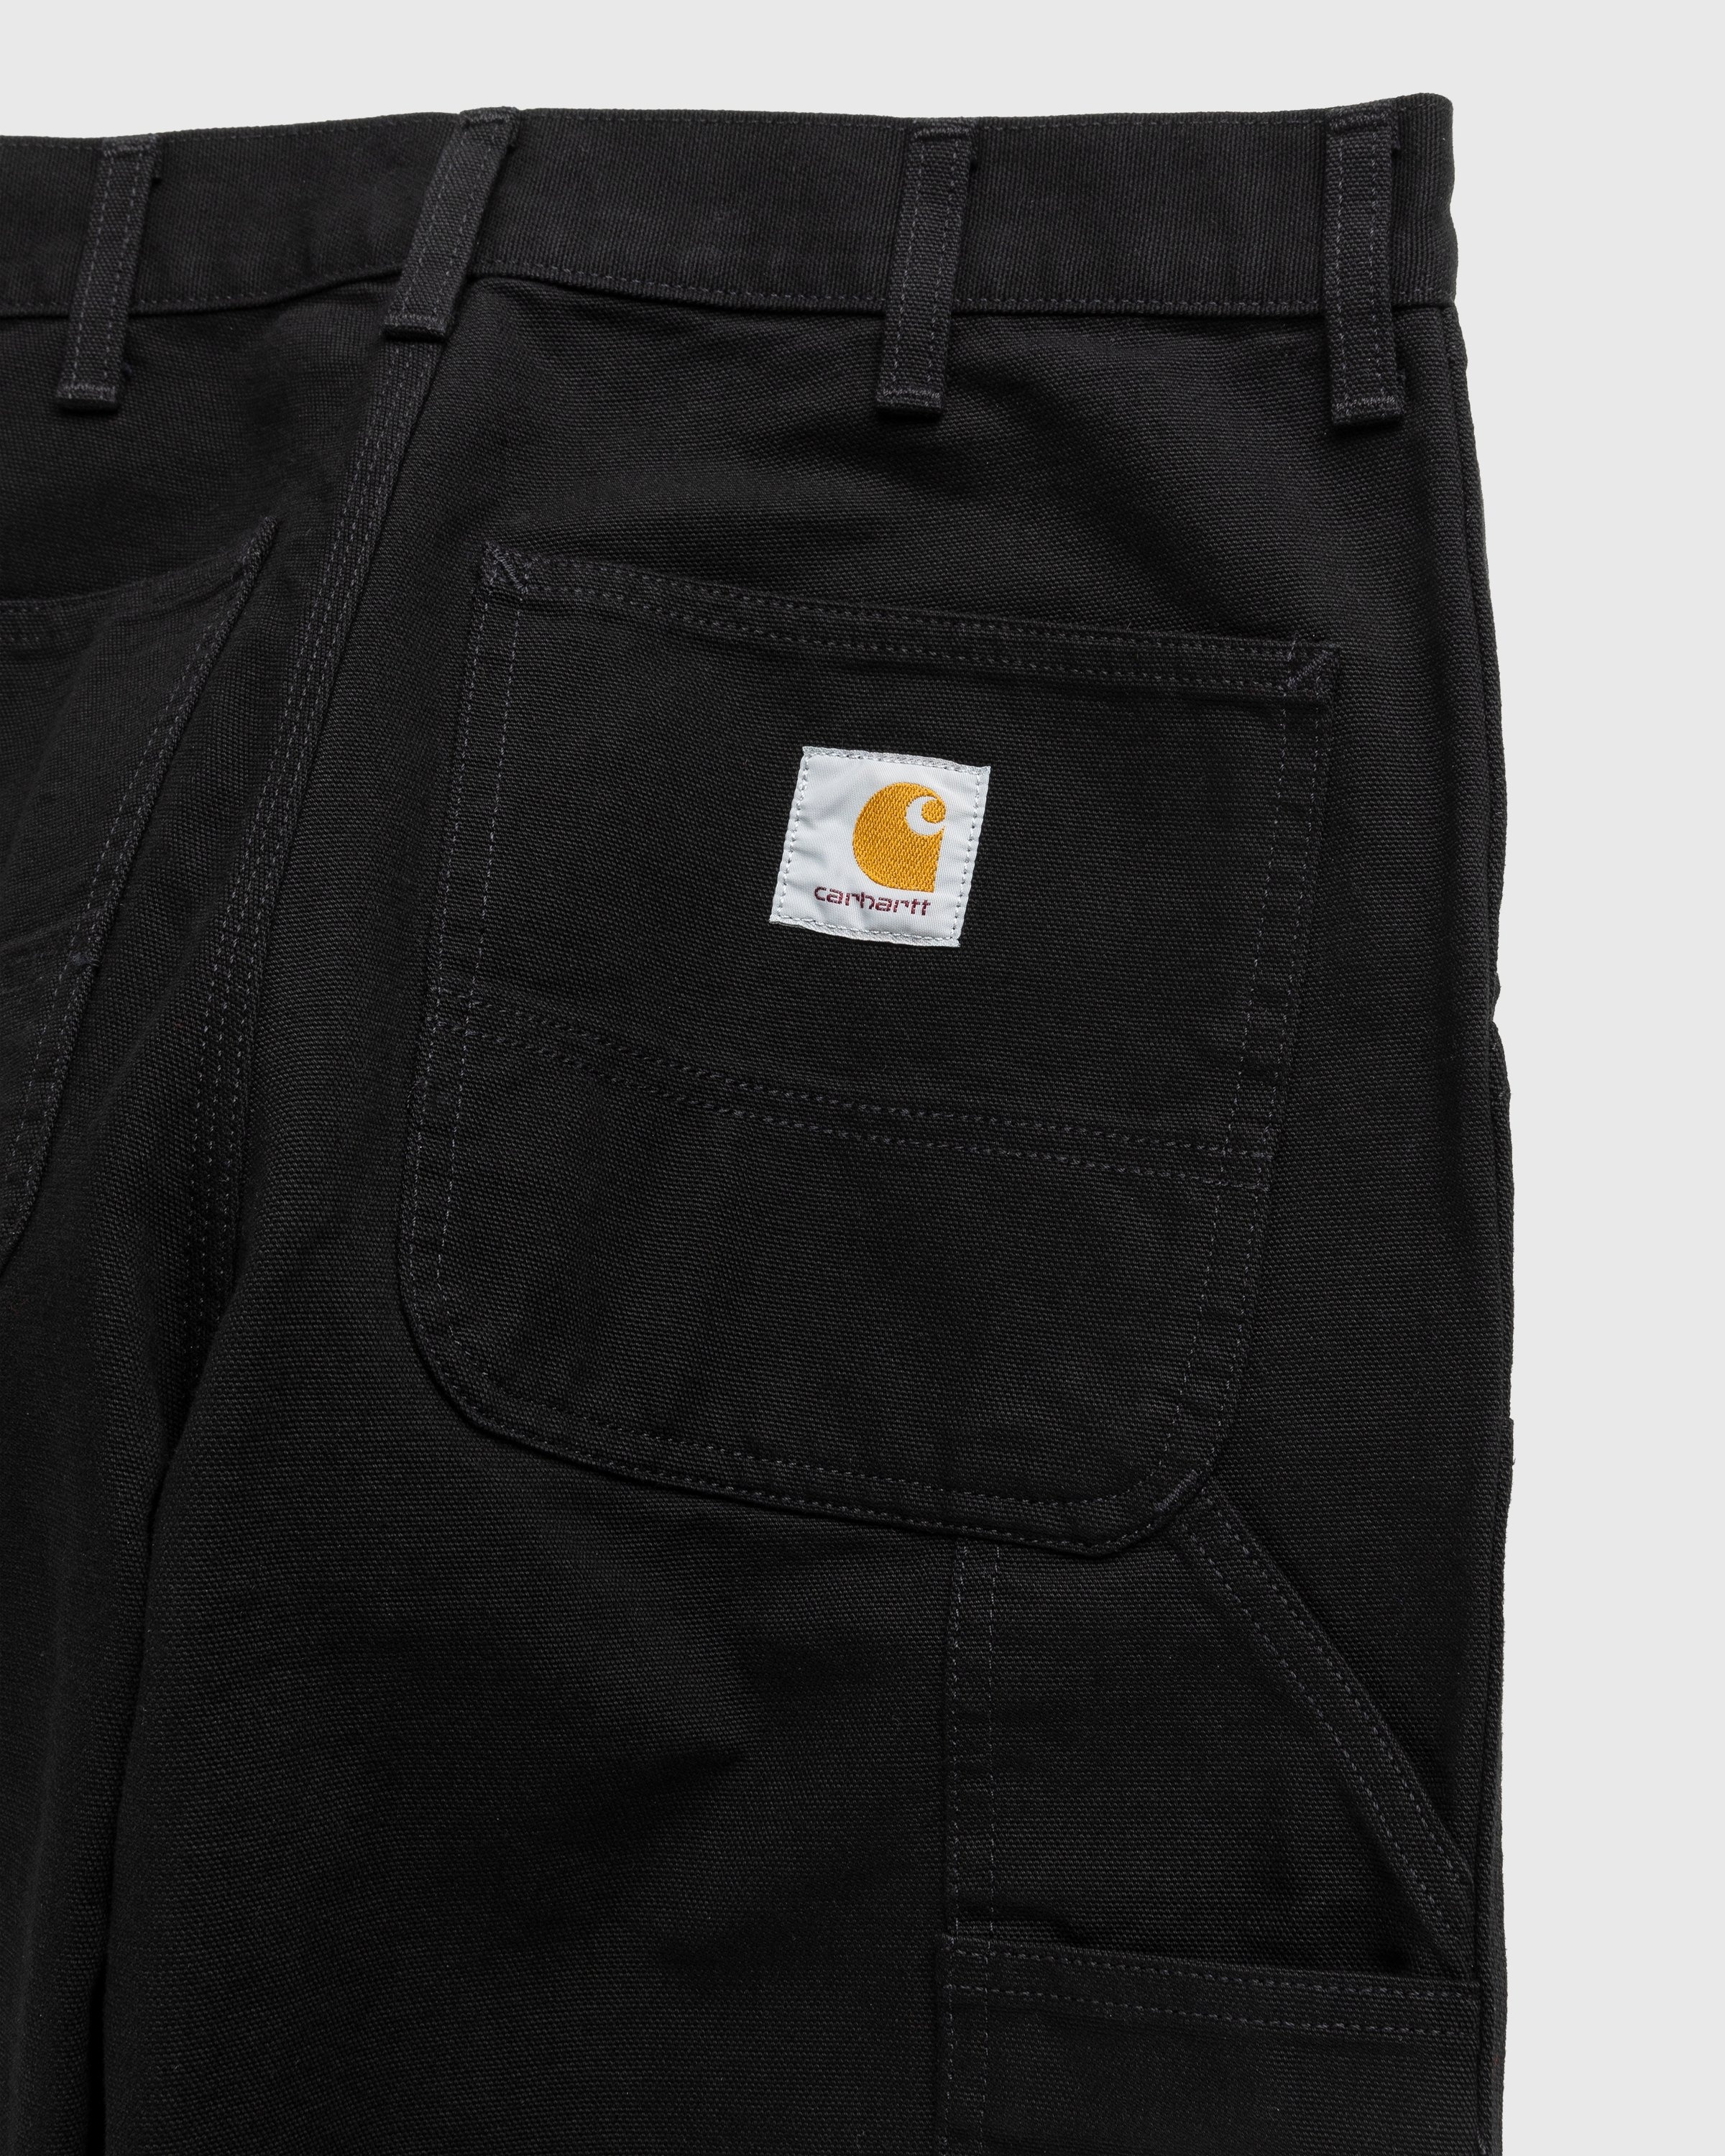 Carhartt WIP – Double Knee Pant Black - Pants - Black - Image 4